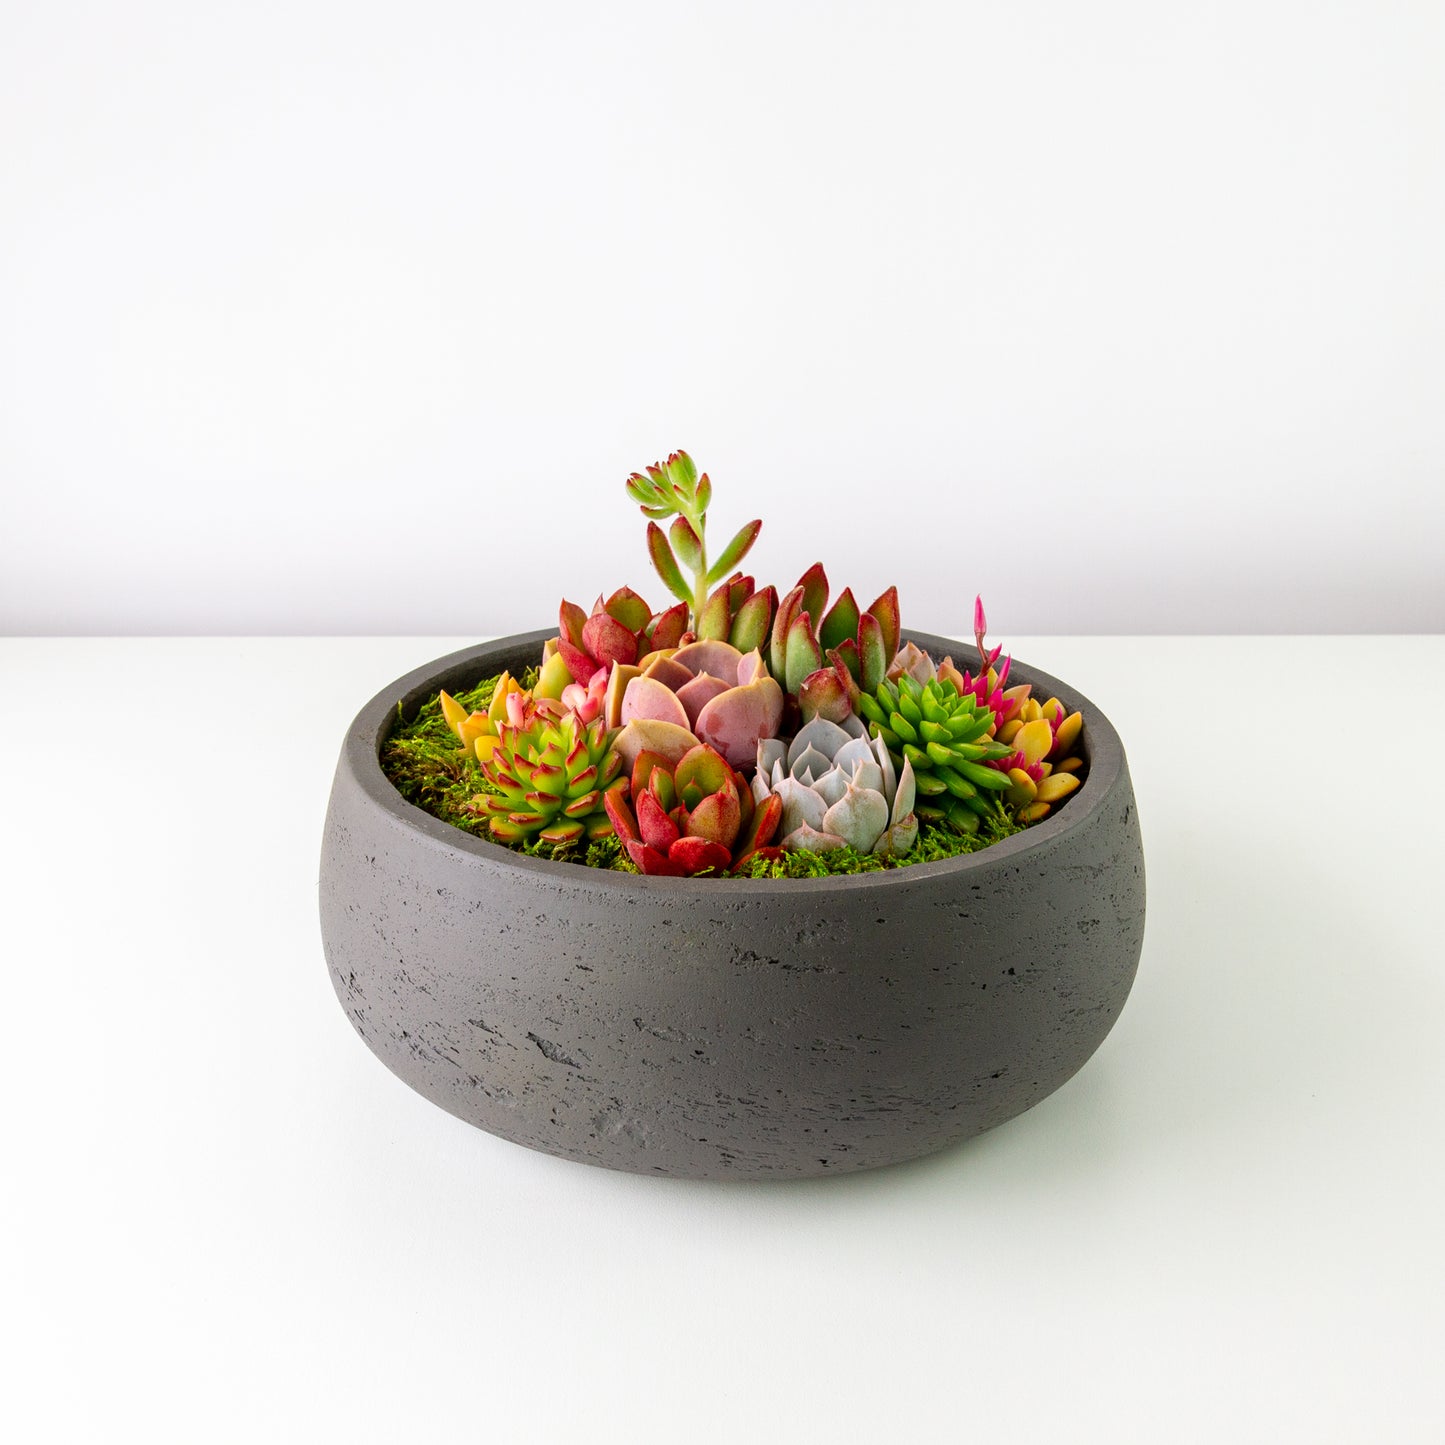 Succulent Arrangement Centerpiece In Cement Bowl - Charcoal Gray, Large